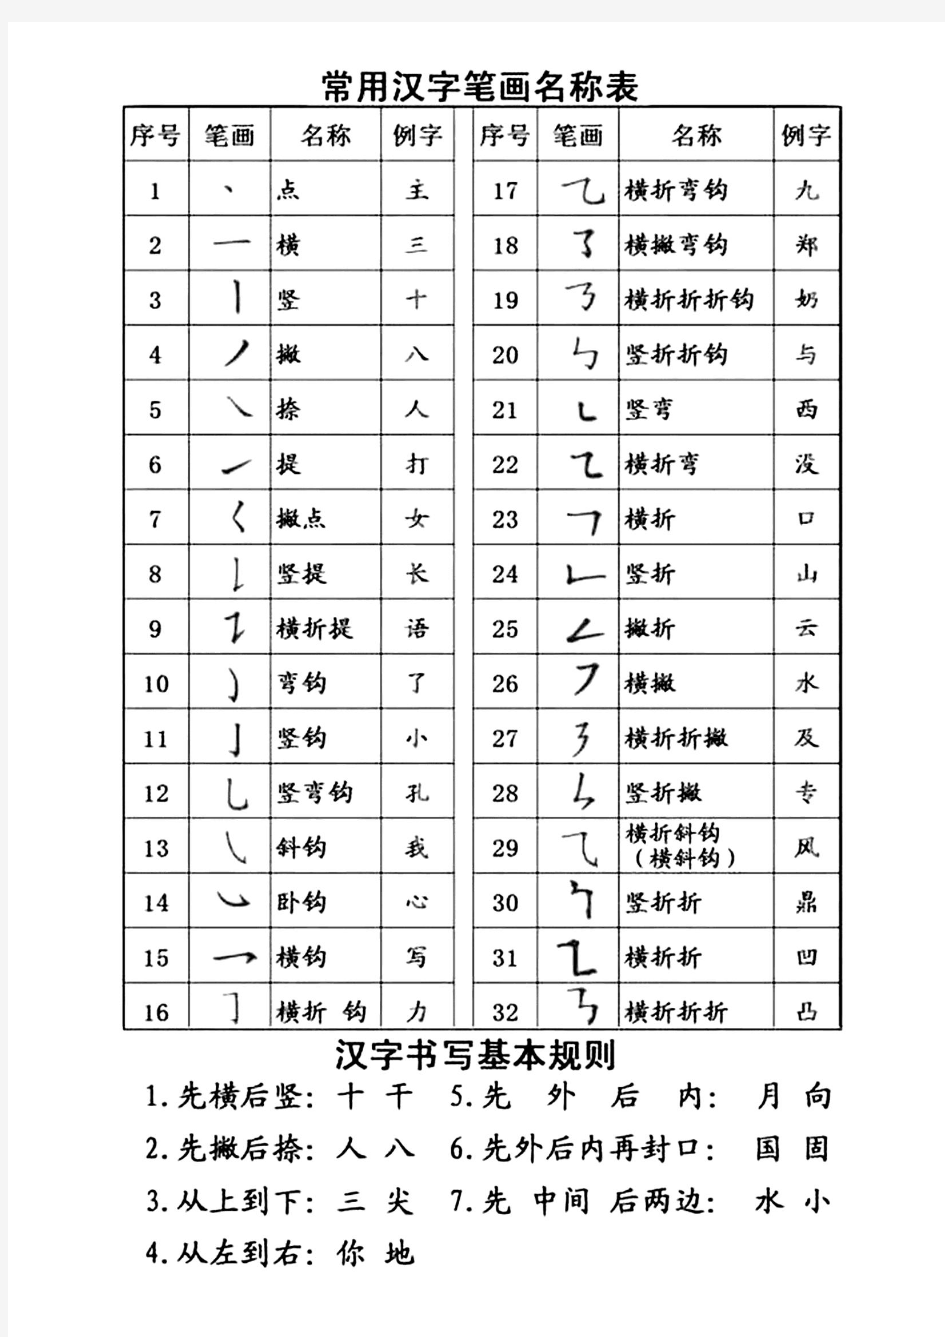 常用汉字笔画名称表及书写基本规则